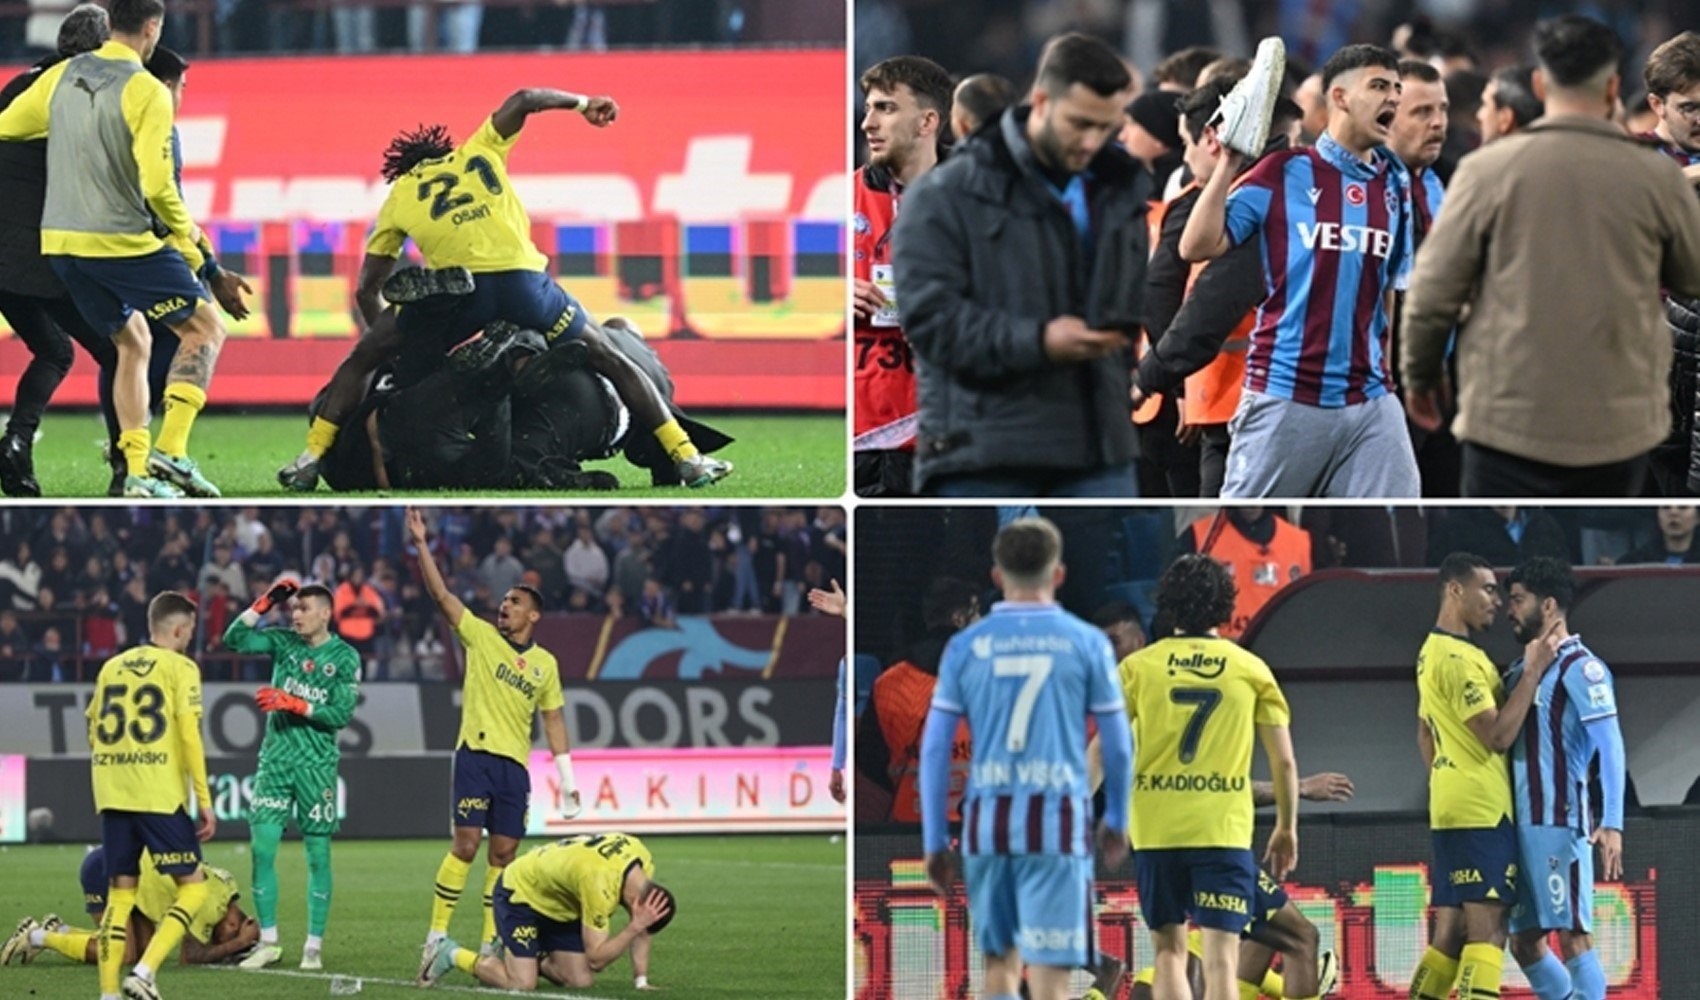 Olaylı Trabzonspor - Fenerbahçe maçından sonra tutuklanan taraftarlarla ilgili yeni gelişme!